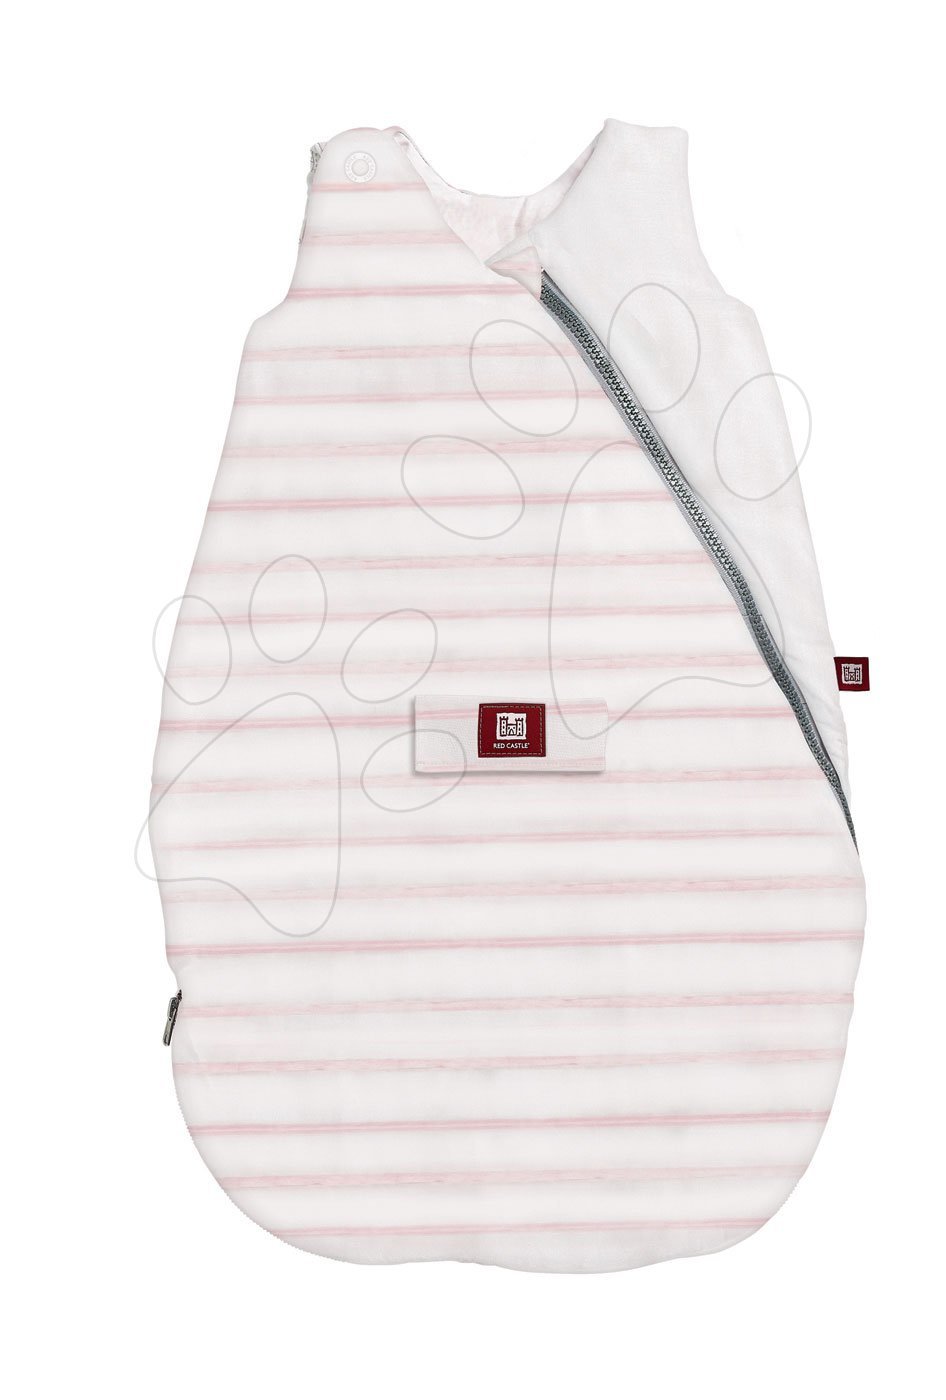 Dojčenský spací vak celoročný - Dojčenský spací vak Red Castle Sailor prešívaný s pásikmi ružový od 0-6 mesiacov